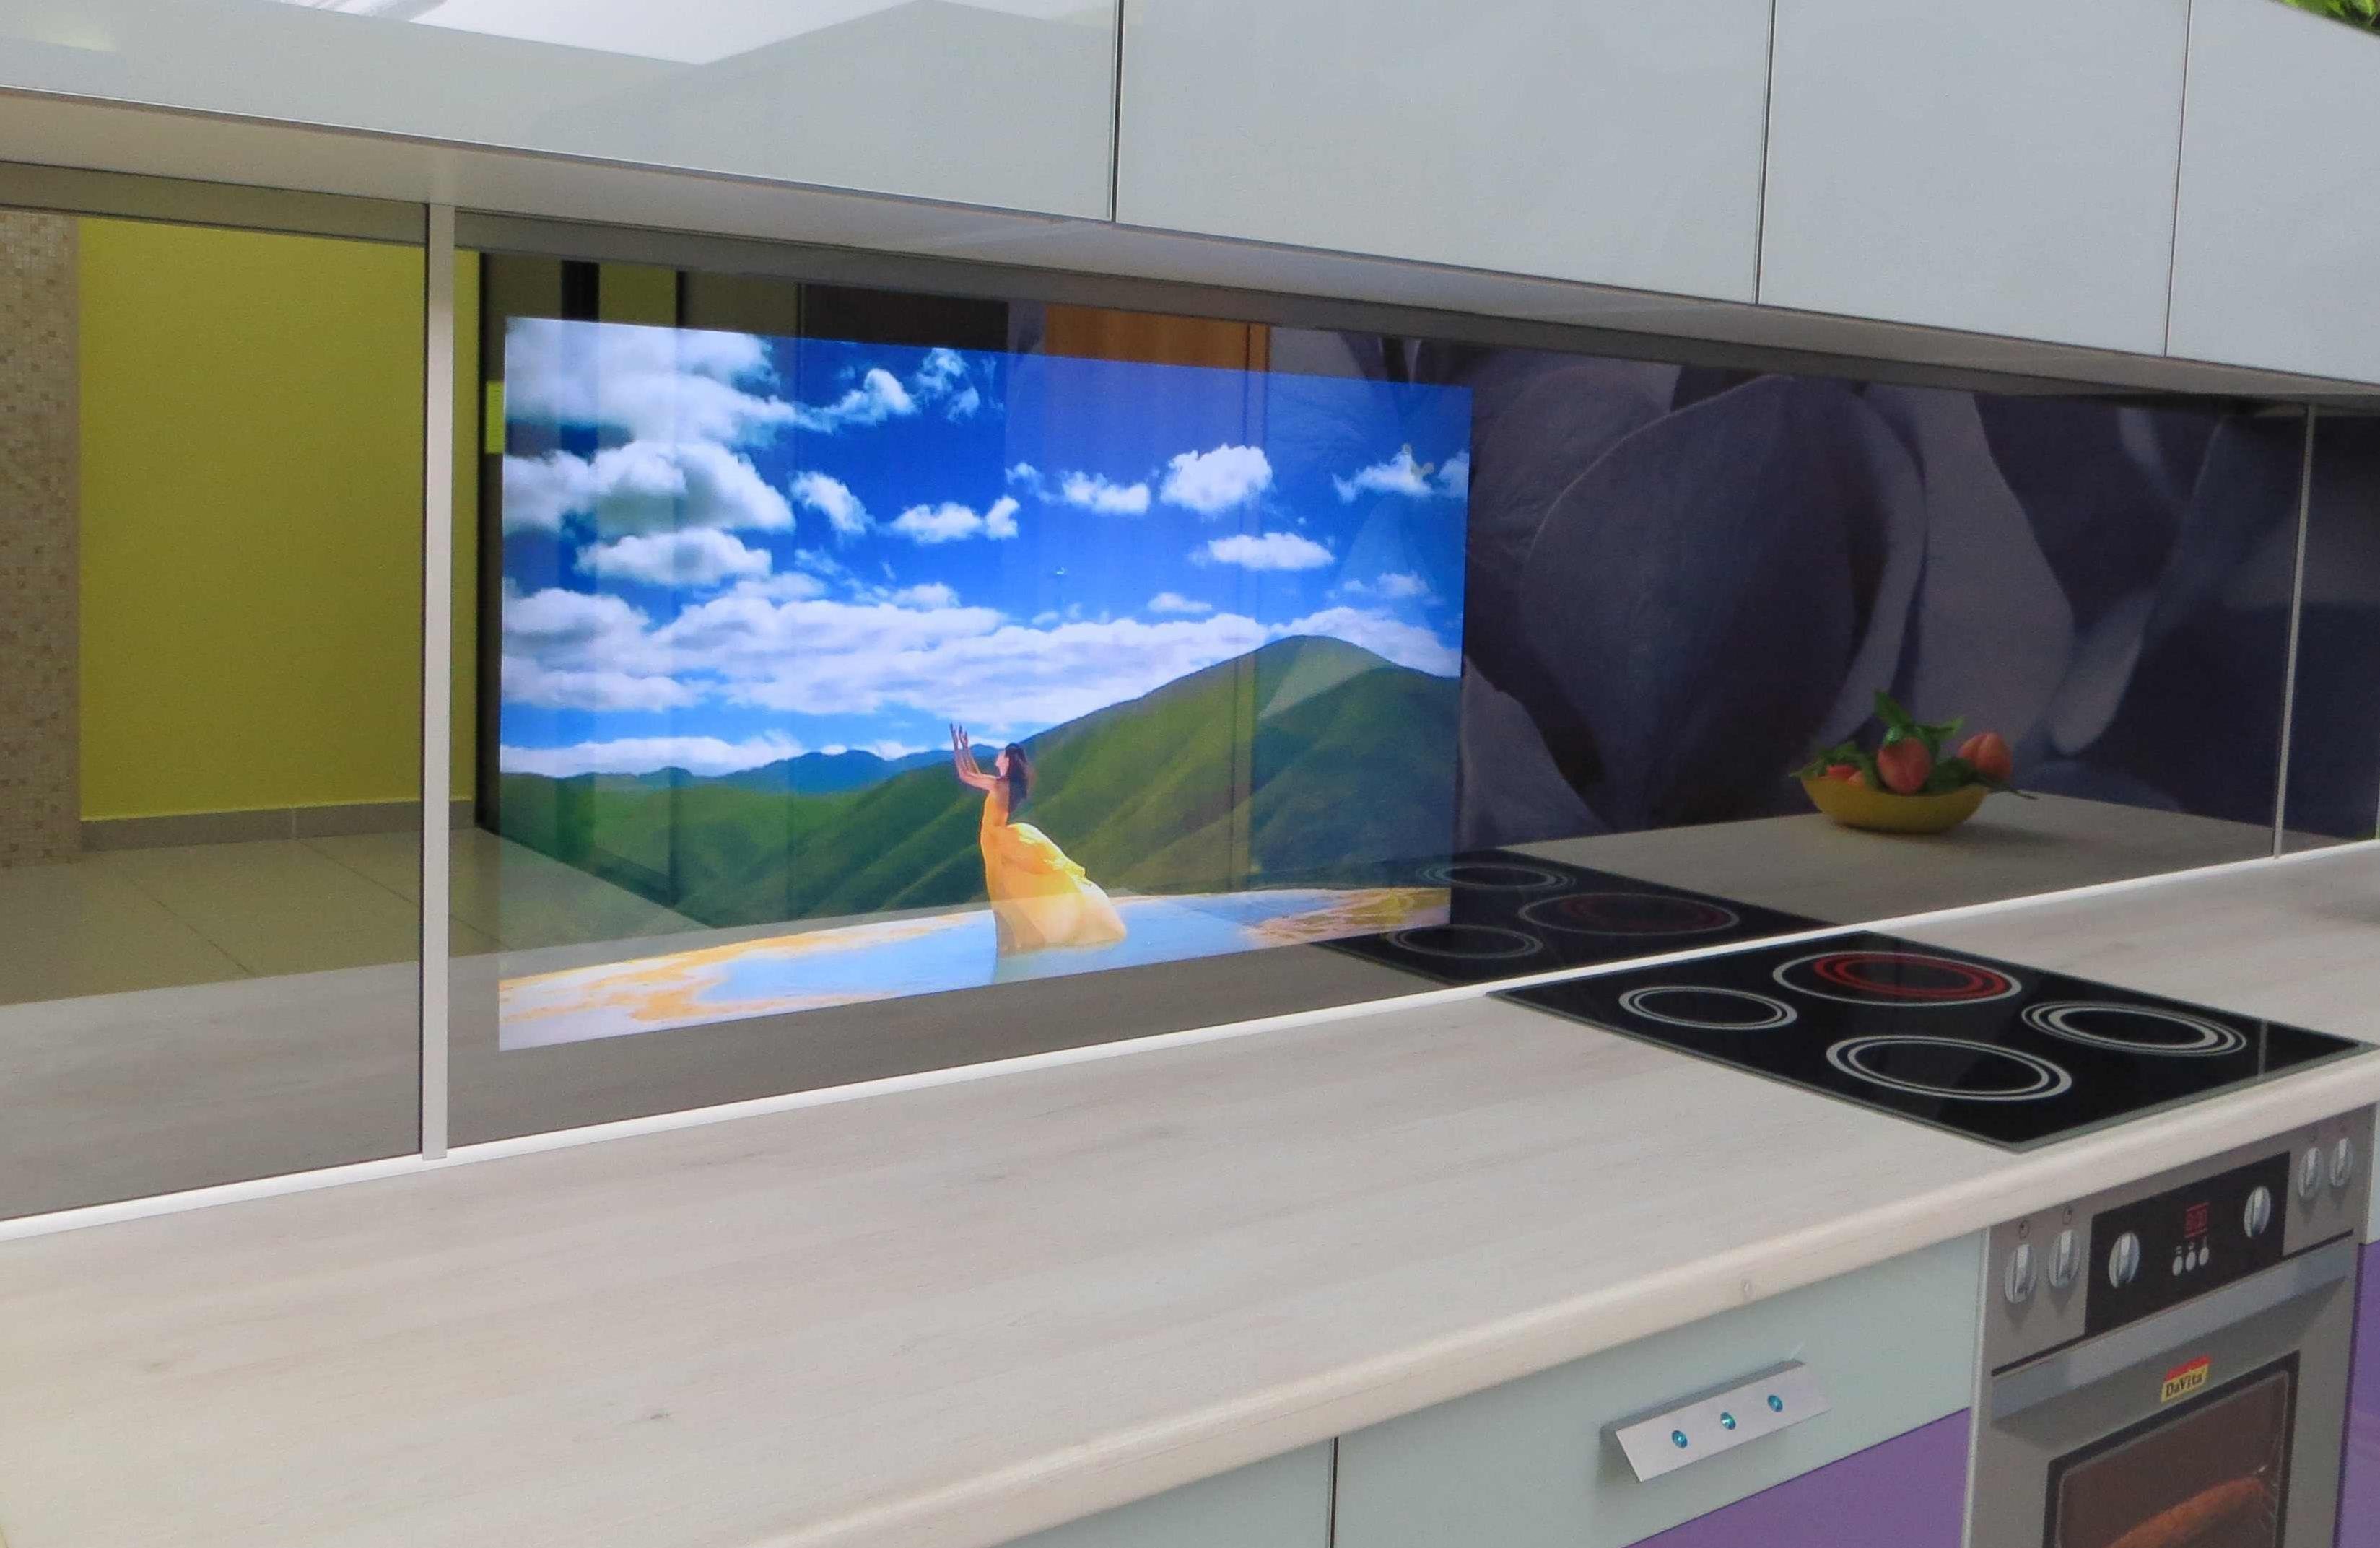 Телевизоры на кухню на авито. Телевизор в фартуке кухни встроенный. Телевизор встроен в кухонный фартук. Телевизор в кухонном фасаде. Встроенный телевизор в кухонный фартук.